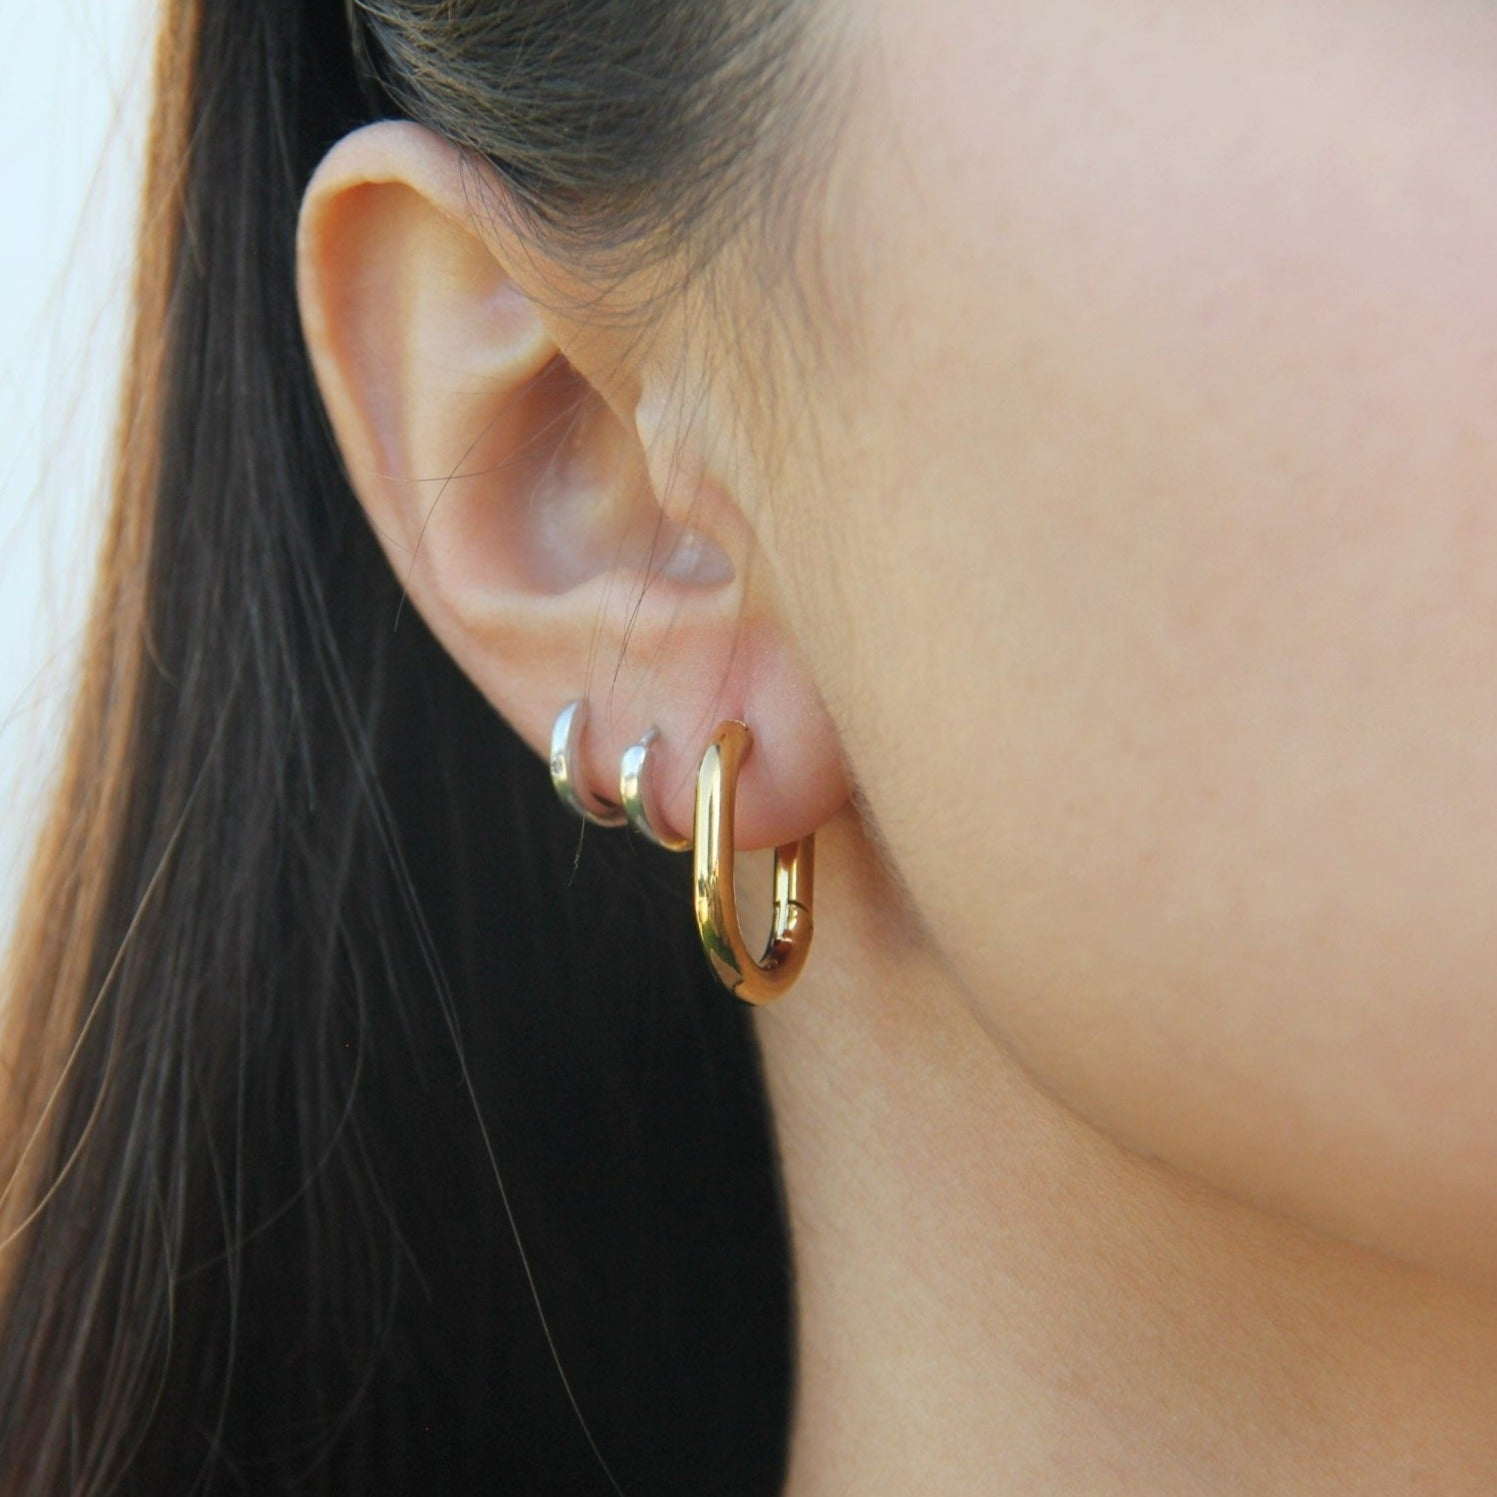 Gold Oval Hoop Earrings For Women - Boutique Wear RENN